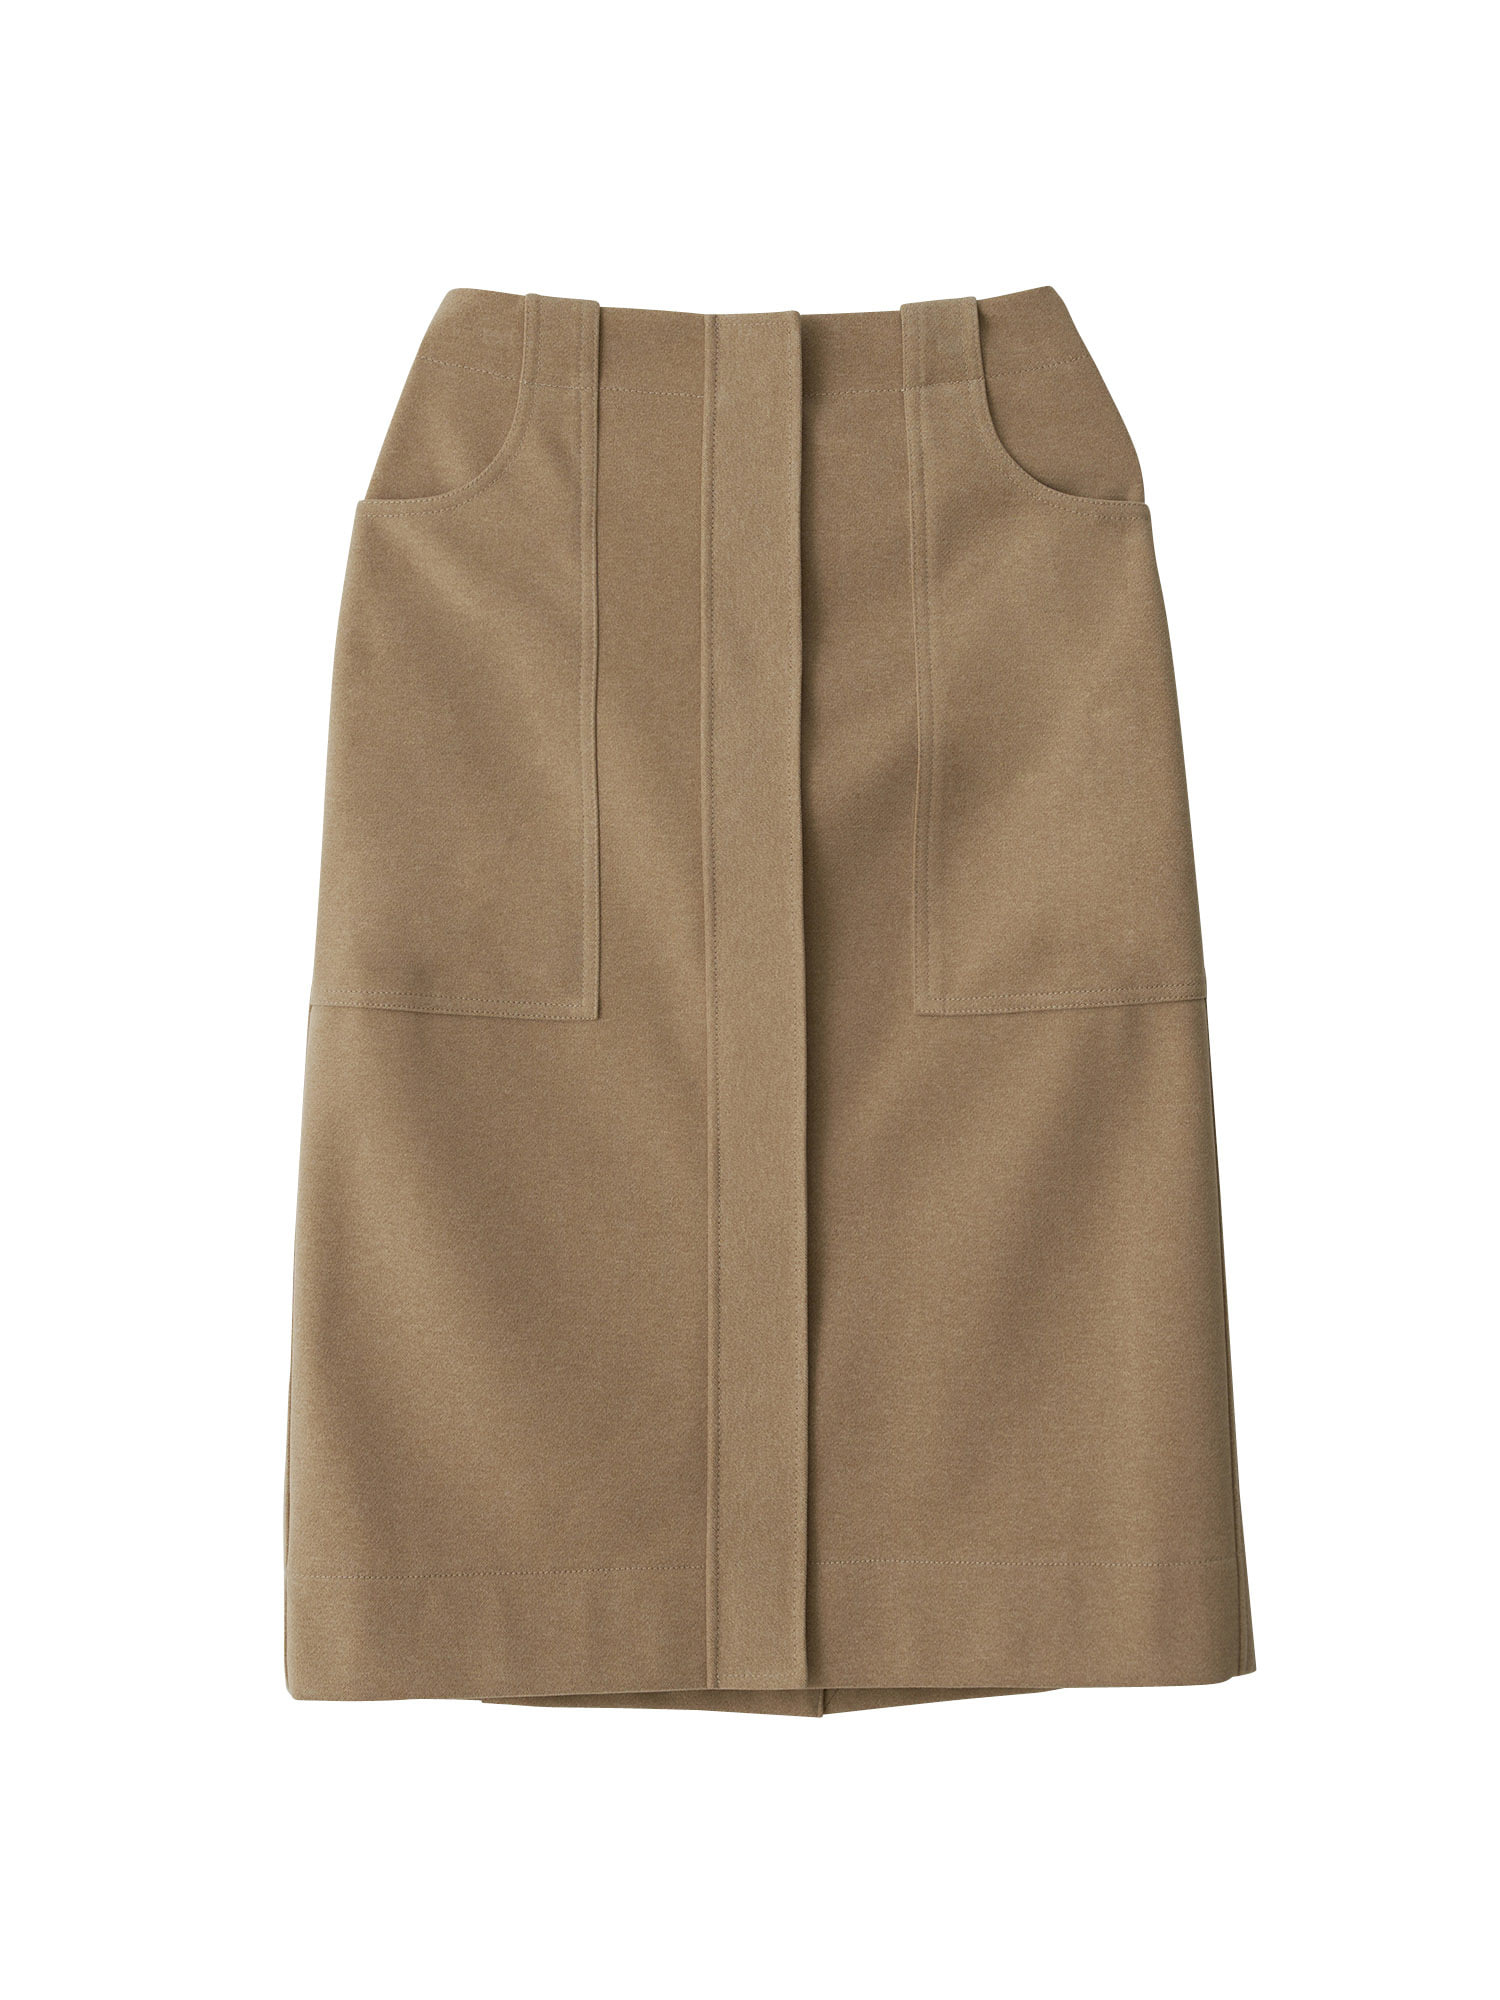 Wool Fatigue Skirt - Beige